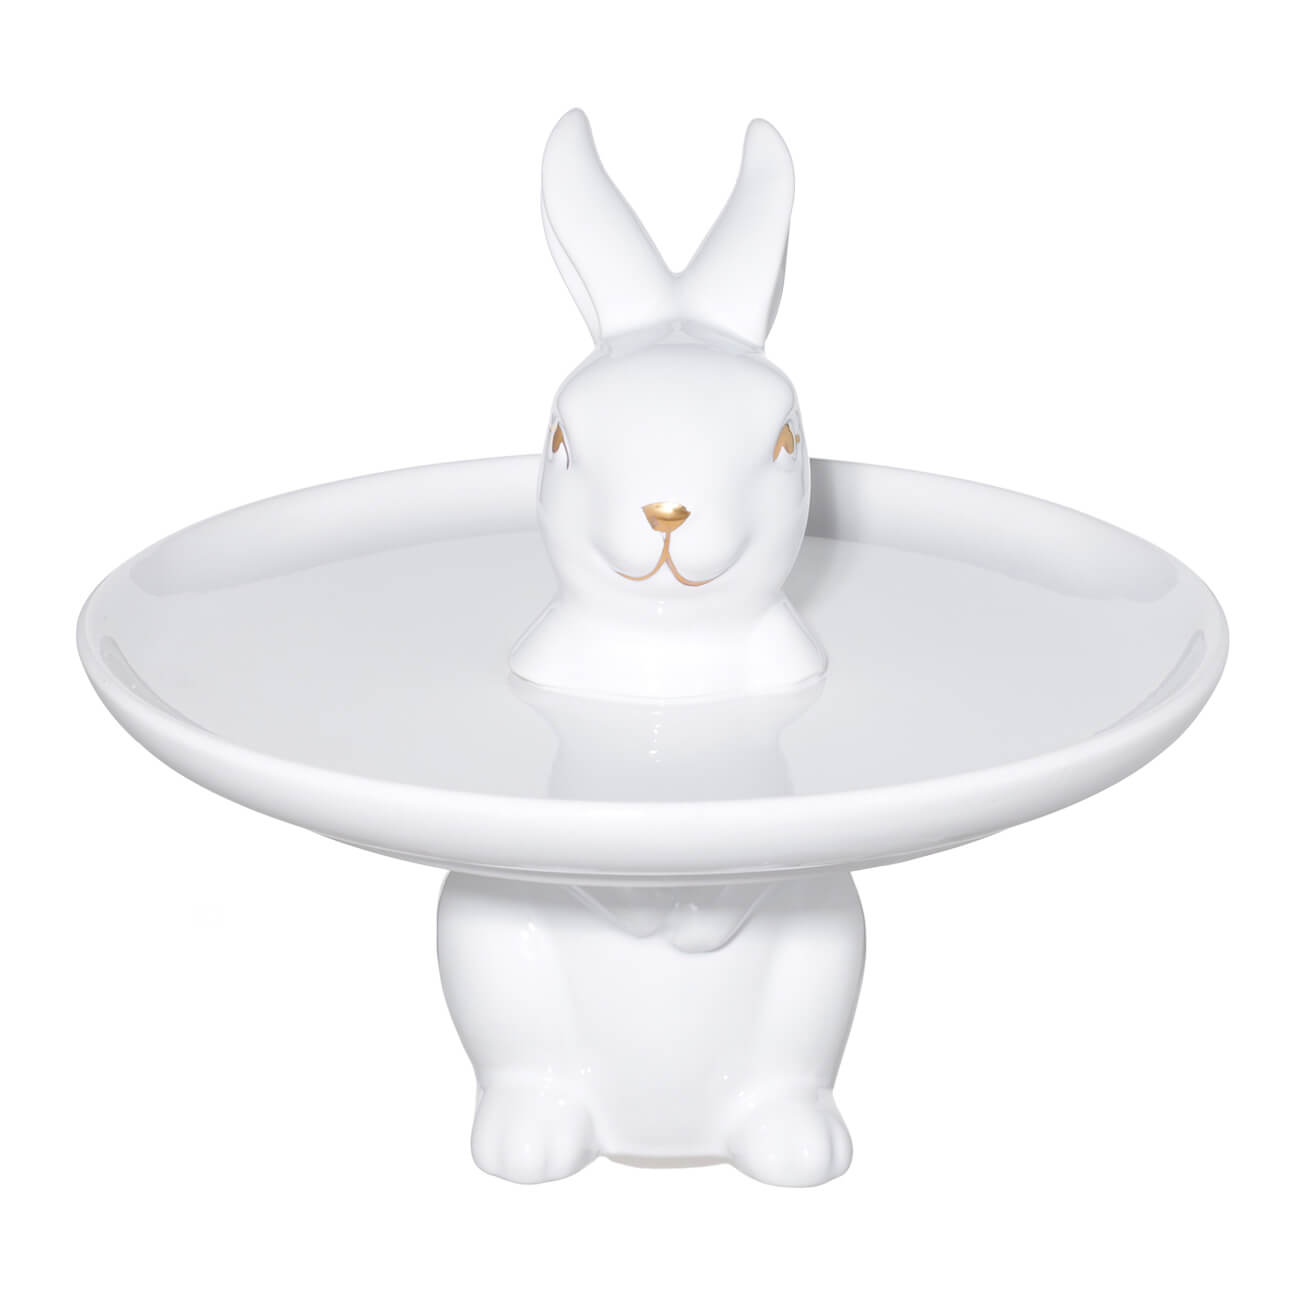 Блюдо на ножке, 18х17 см, керамика, белое, Кролик стоит, Easter gold